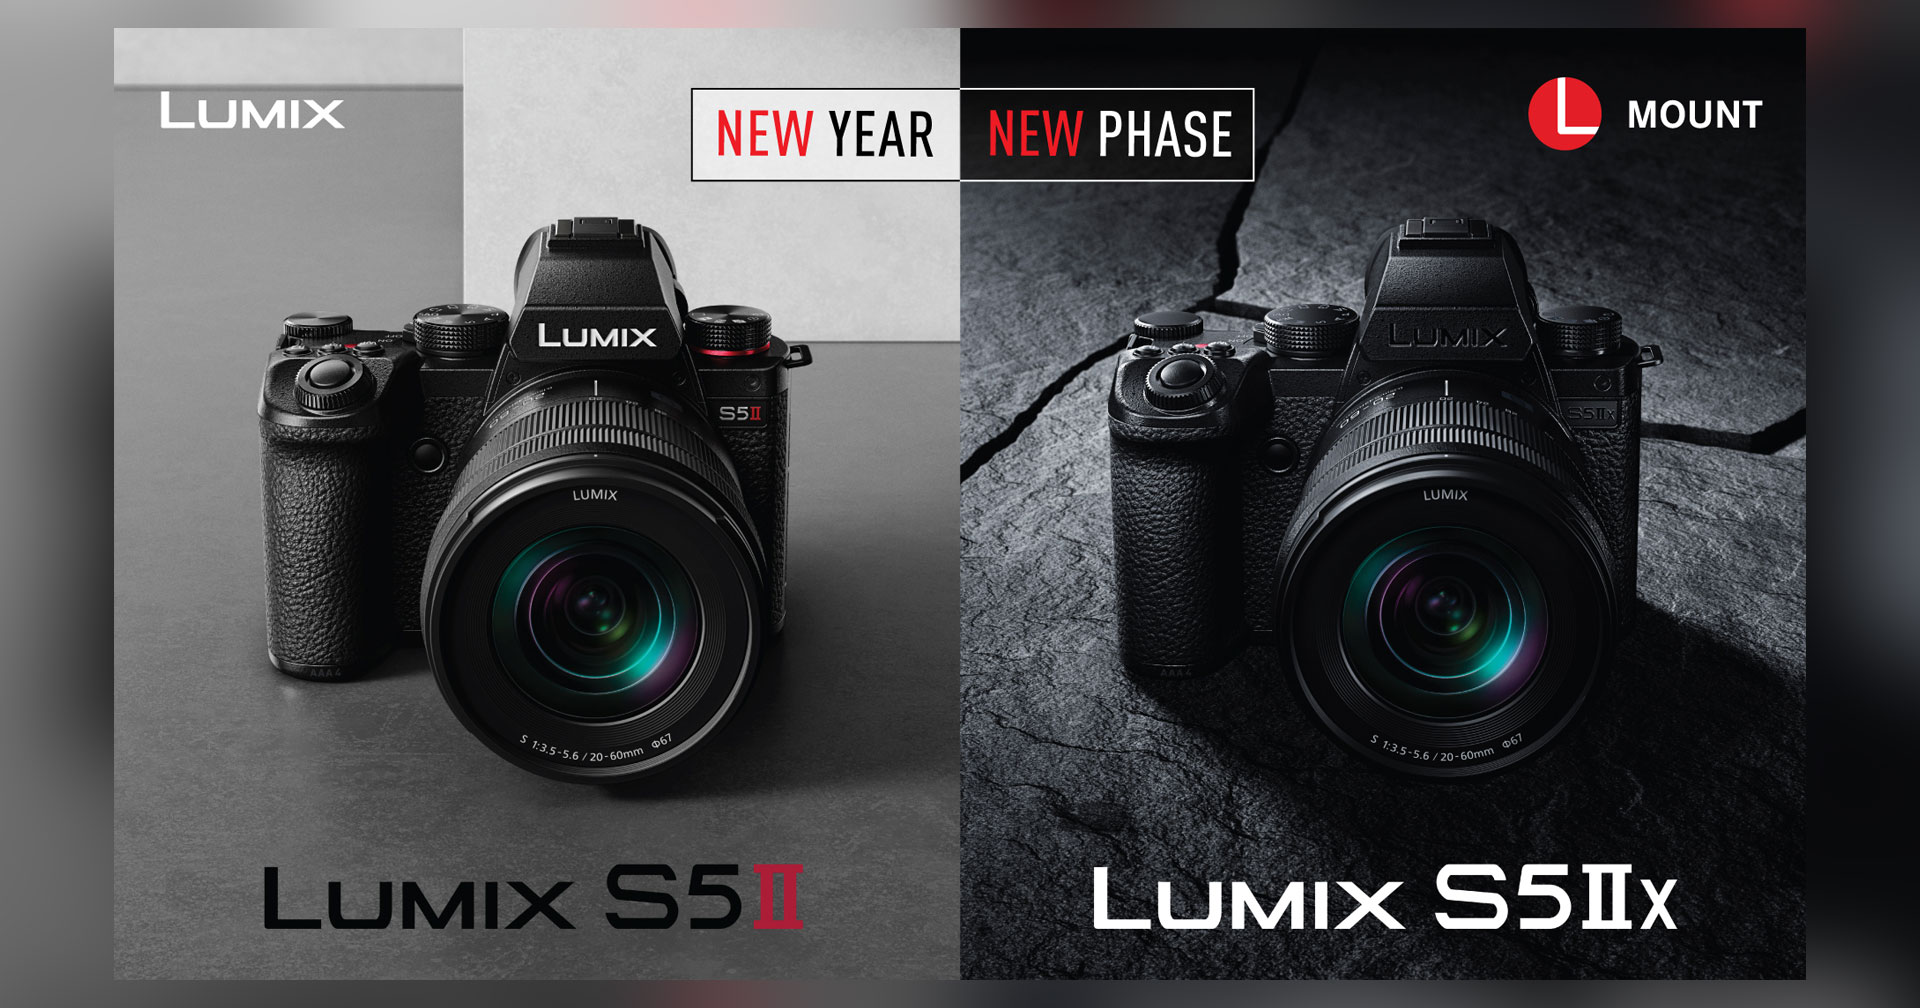 เปิดตัว Panasonic Lumix S5 II และ S5 IIX กล้องมิเรอร์เลสระบบโฟกัส Phase Detection ตัวแรกในซีรีส์ Lumix!